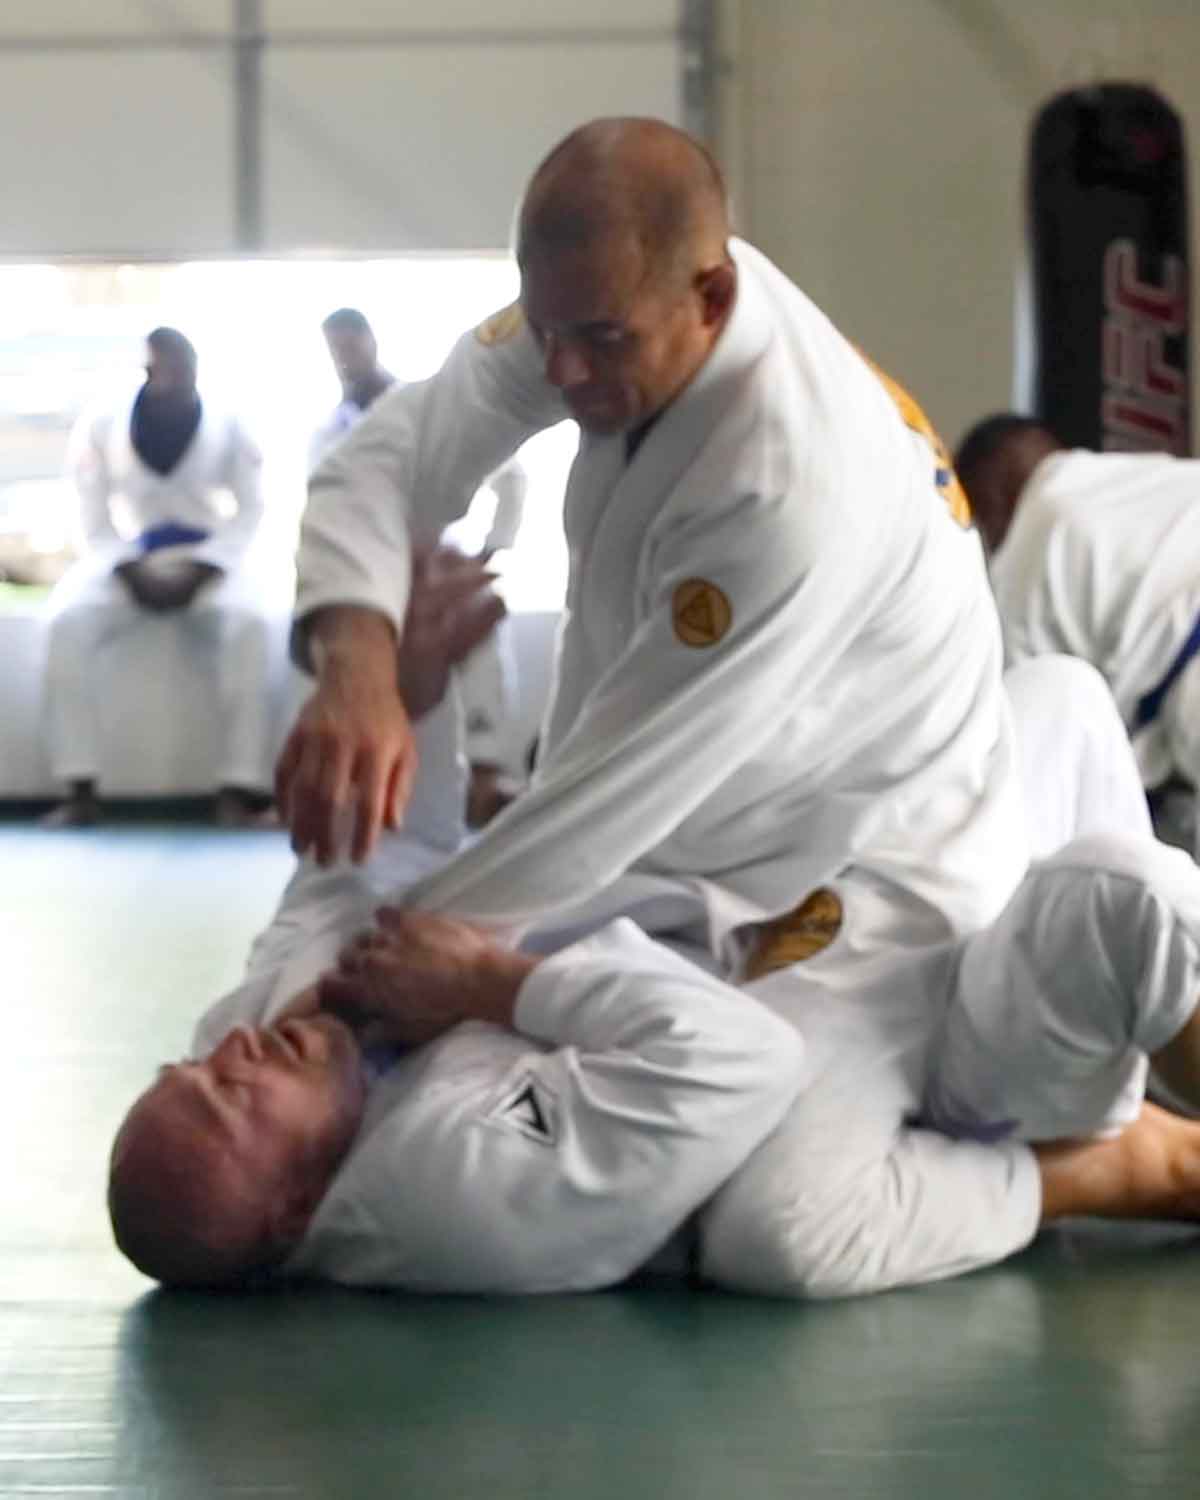 Ryron Gracie practicing Brazilian jiu jitsu